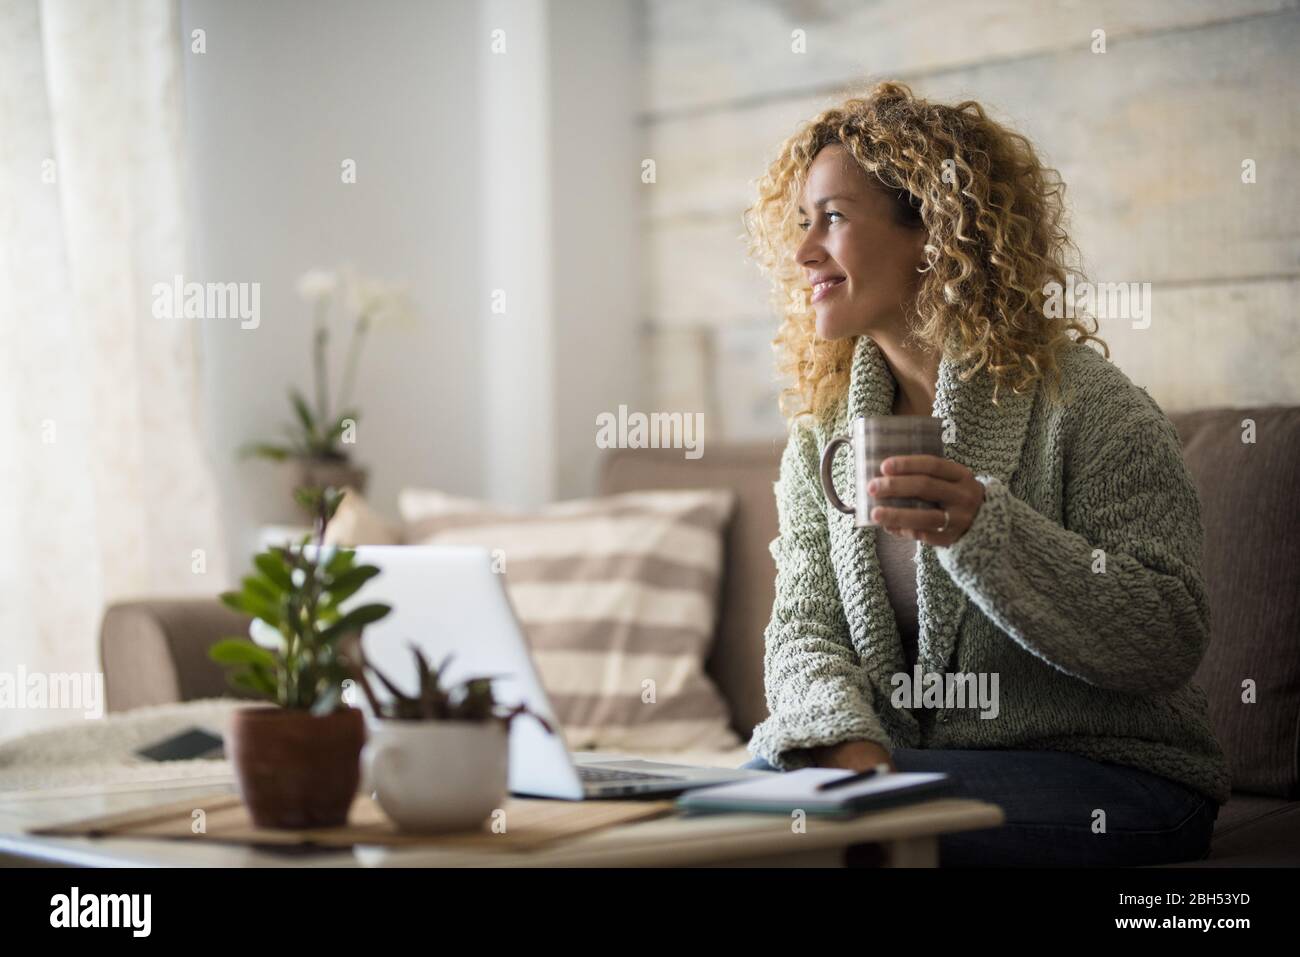 Lächelnde Frau hält einen Drink am Laptop Stockfoto